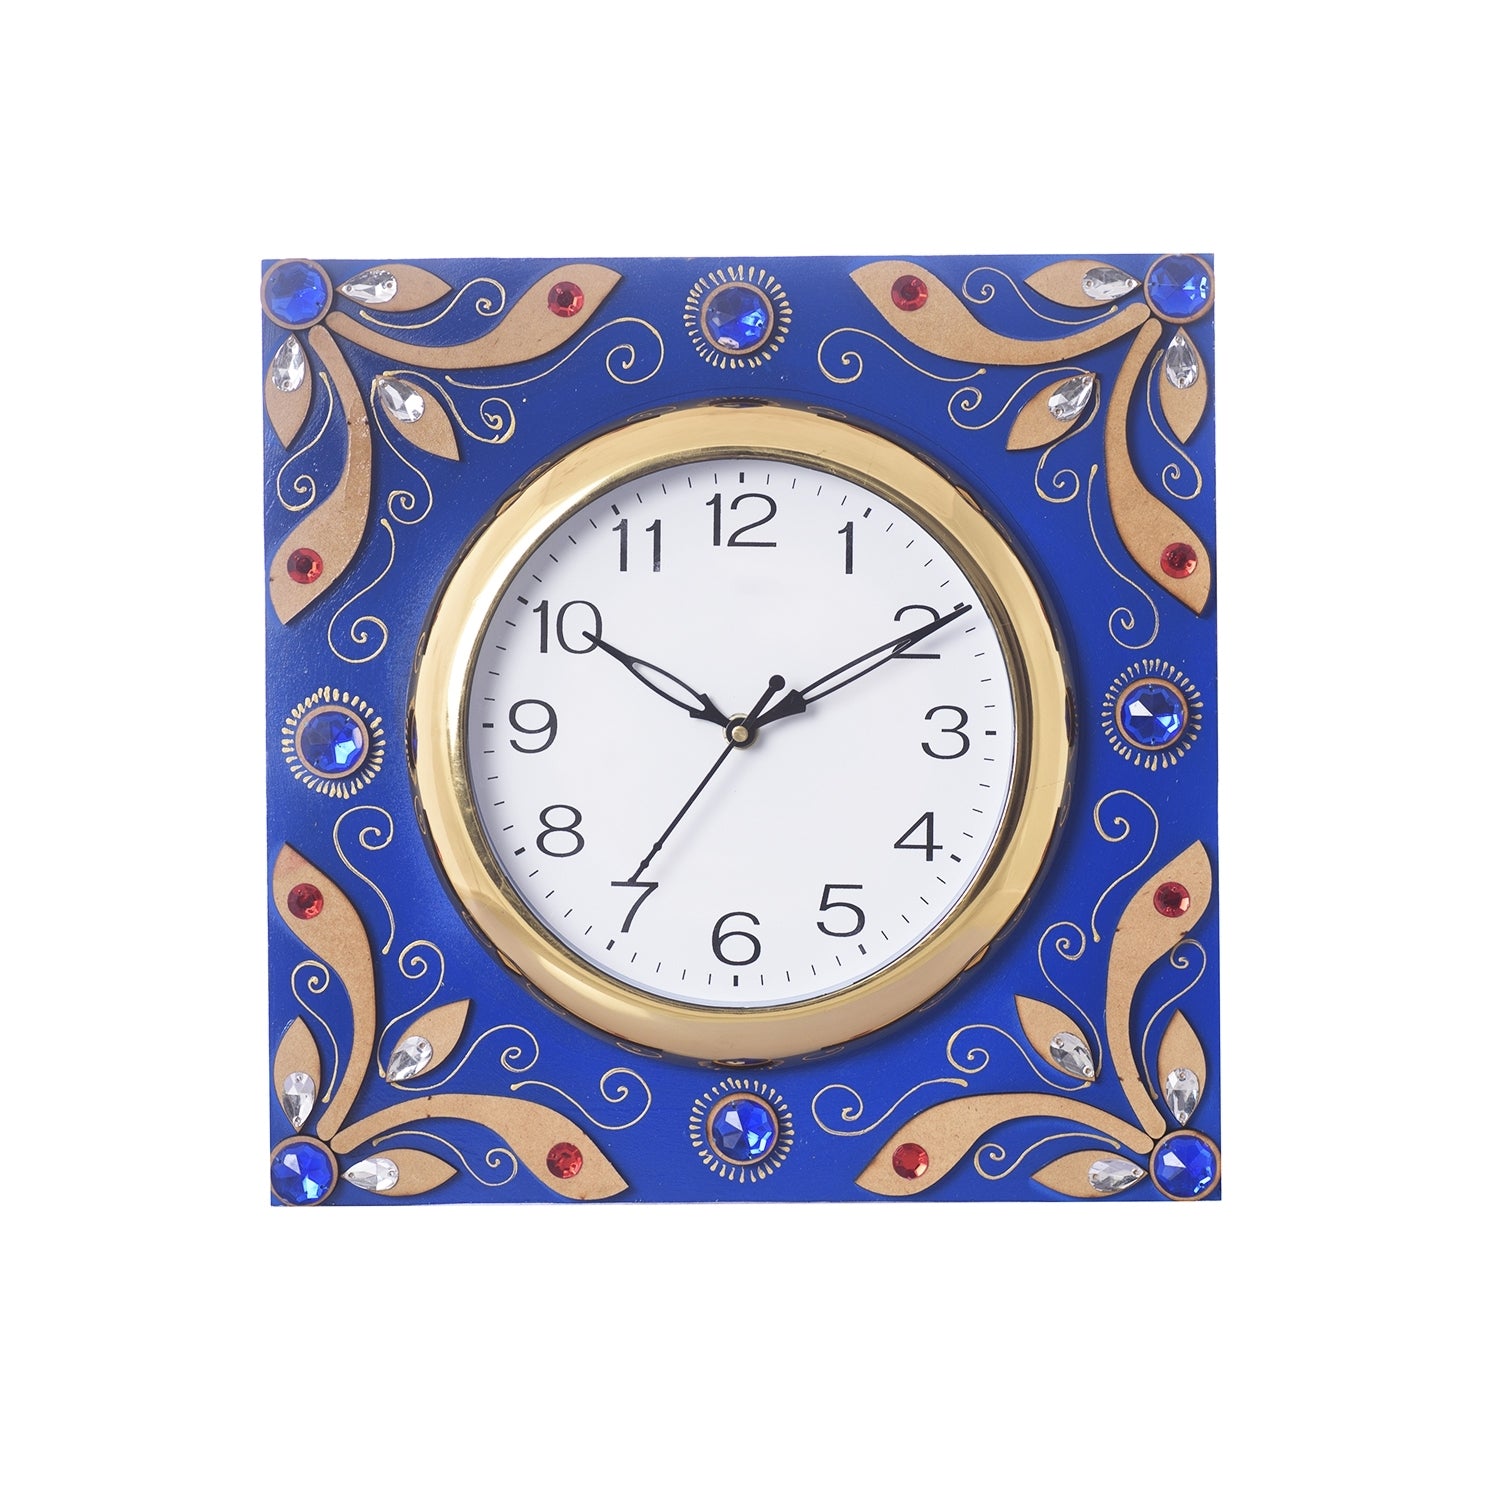 Wooden Papier Mache Splendid Artistic Handcrafted Wall Clock